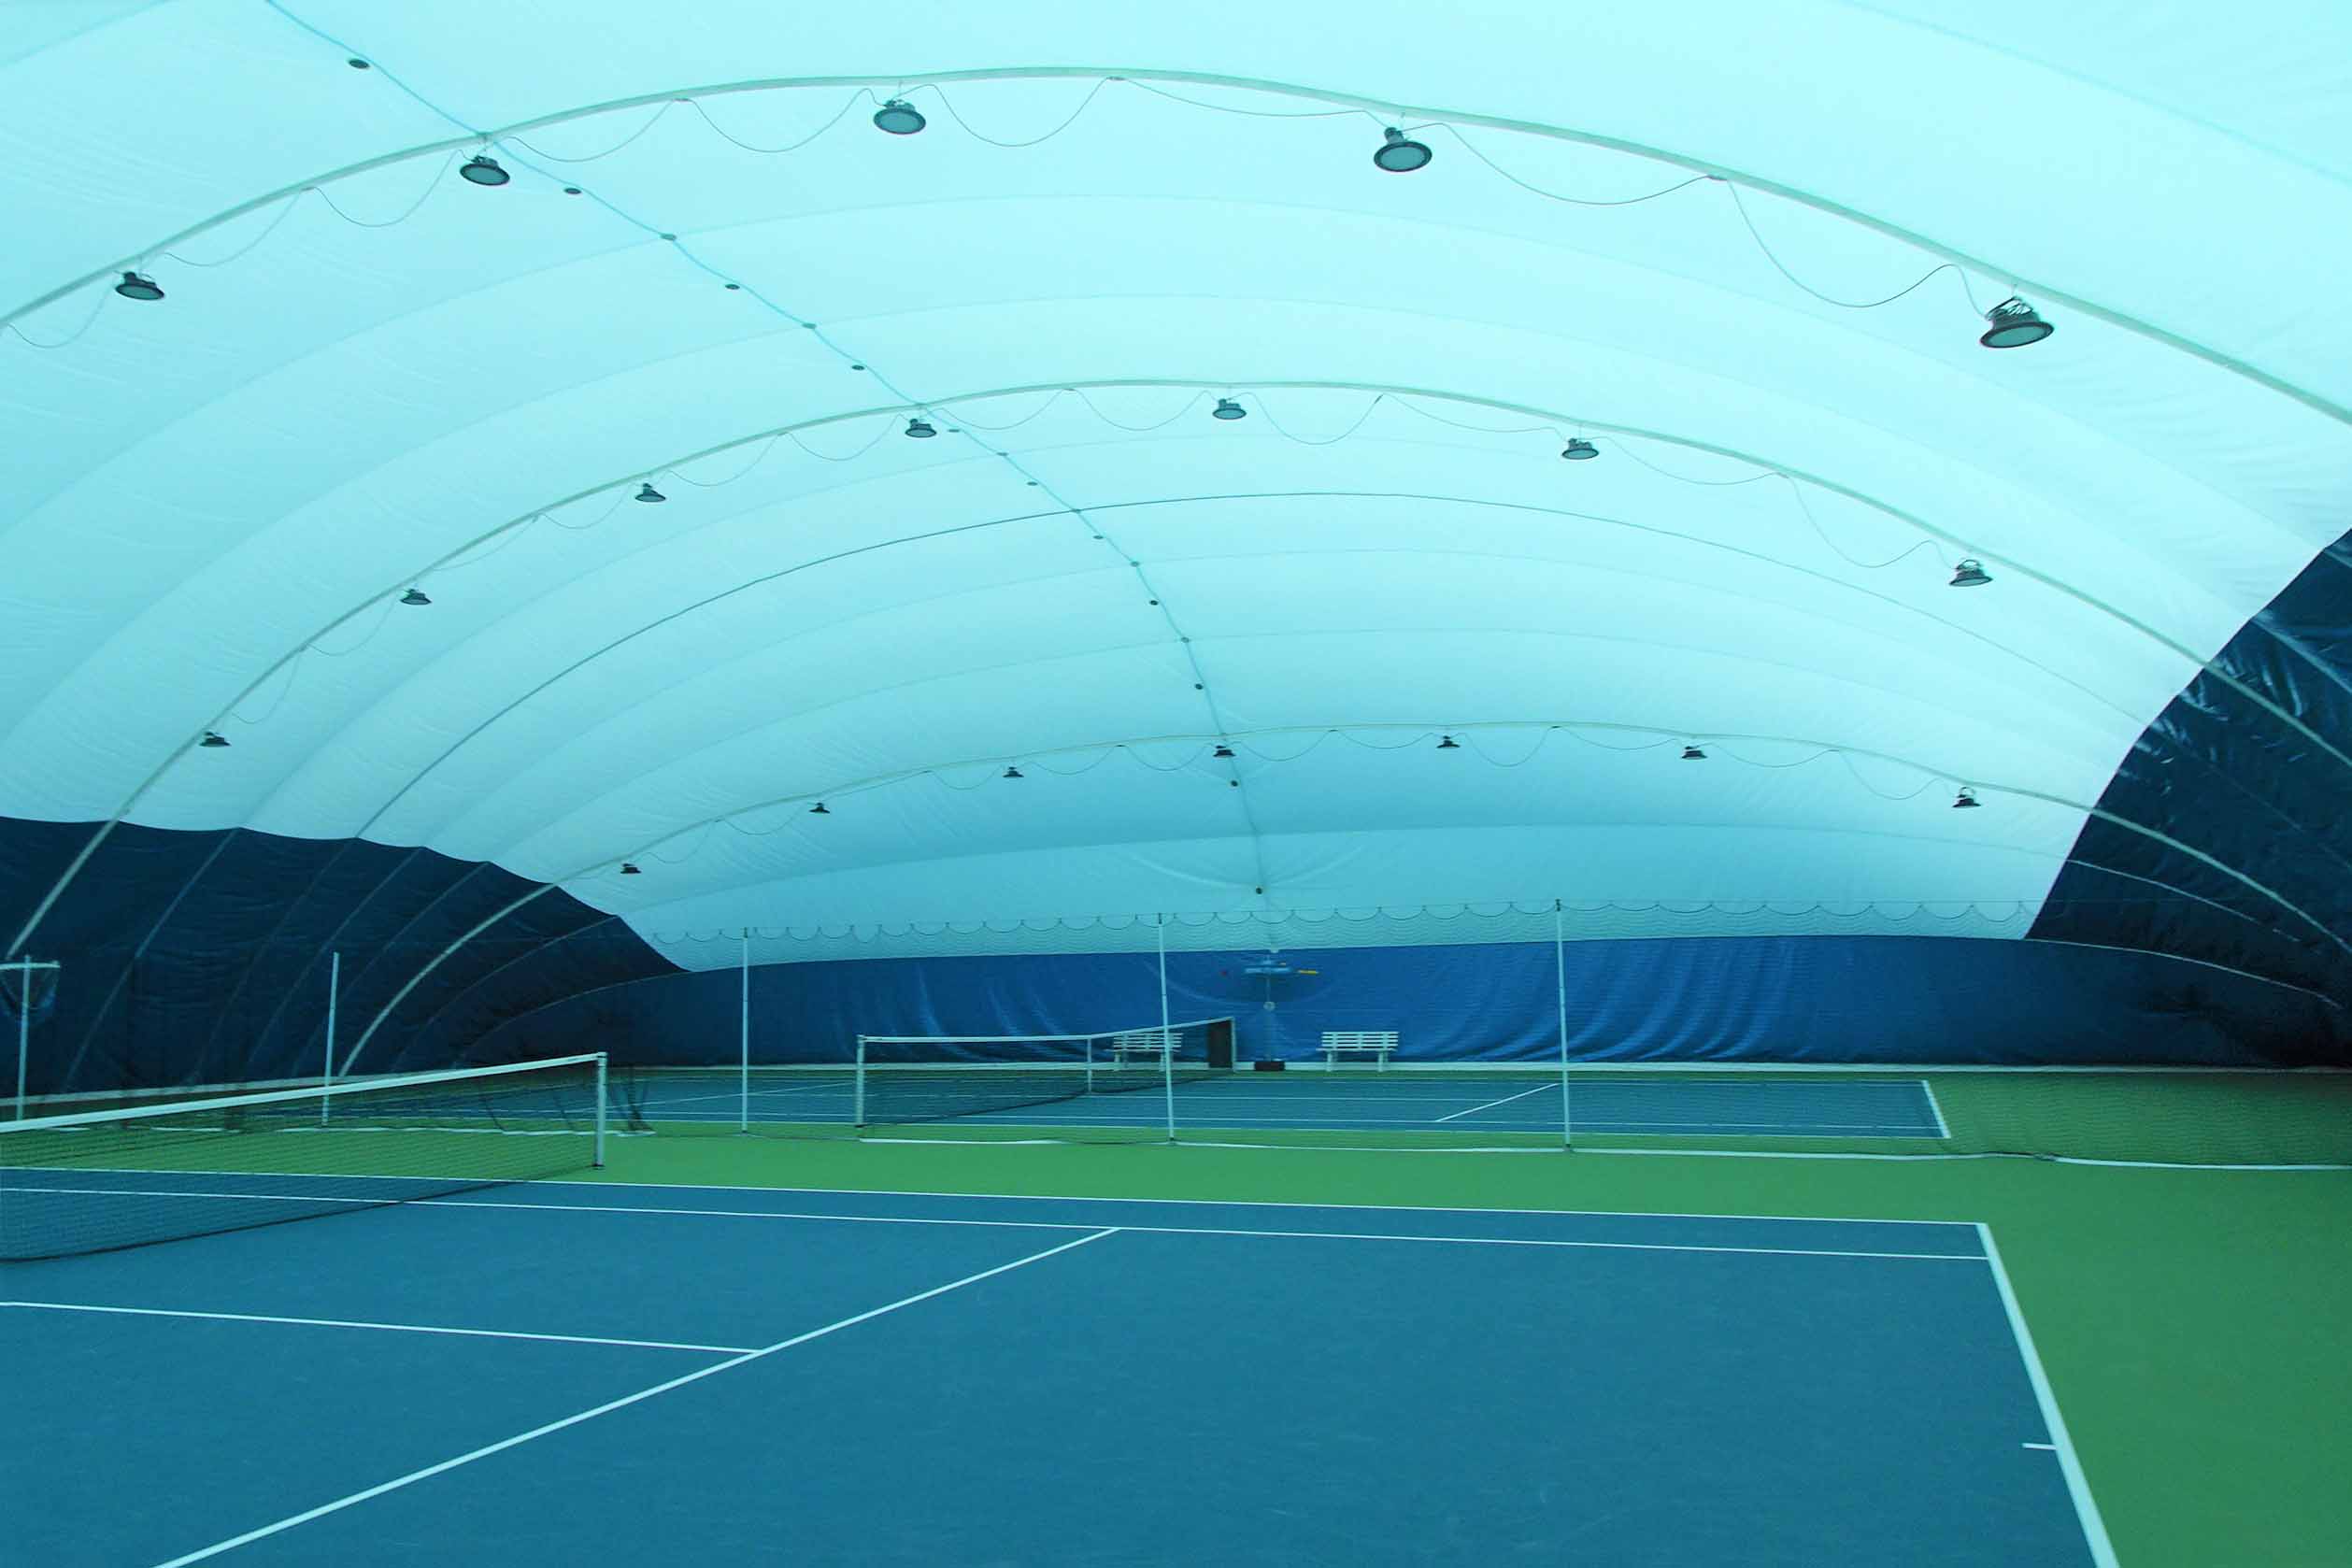 Bild des Tennisplatzes unter der Membranhalle